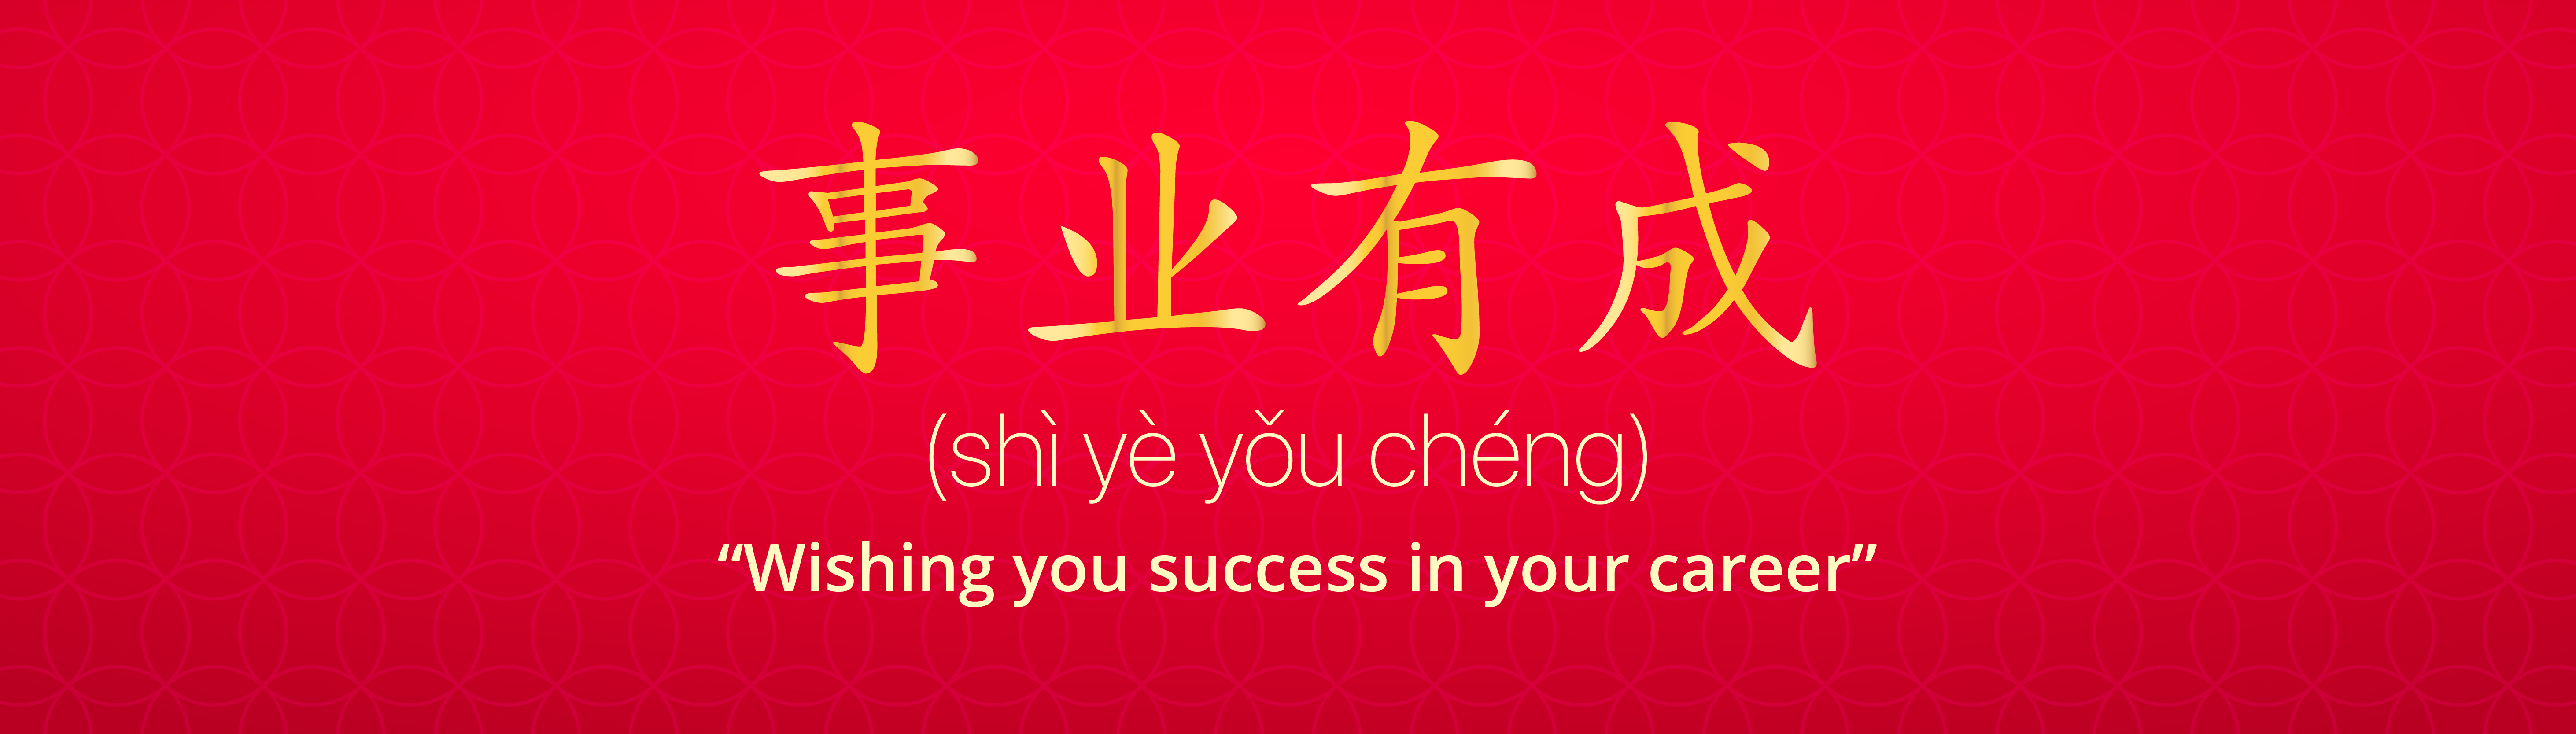 Shi Ye You Cheng(事业有成 ): “Wishing you success in your career”